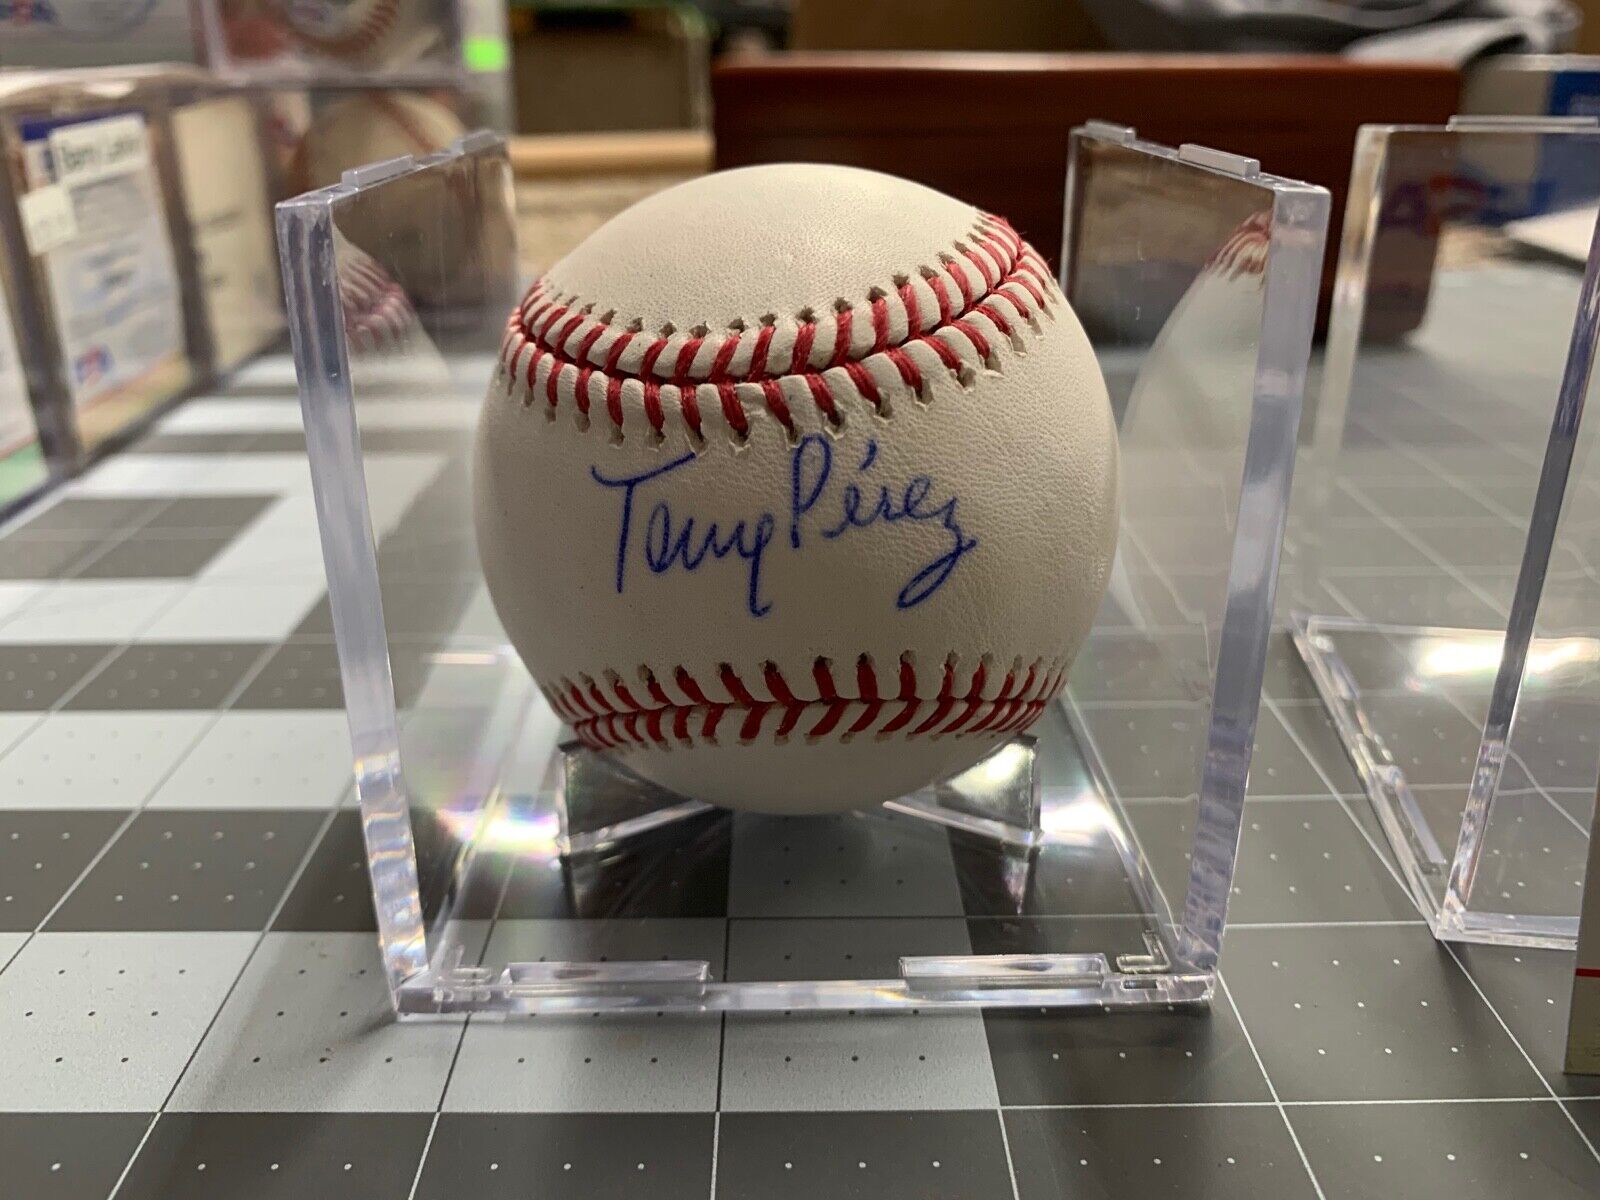 Tony Perez Autographed Rawlings Manfred Baseball PSA Certified AI63961 MLB